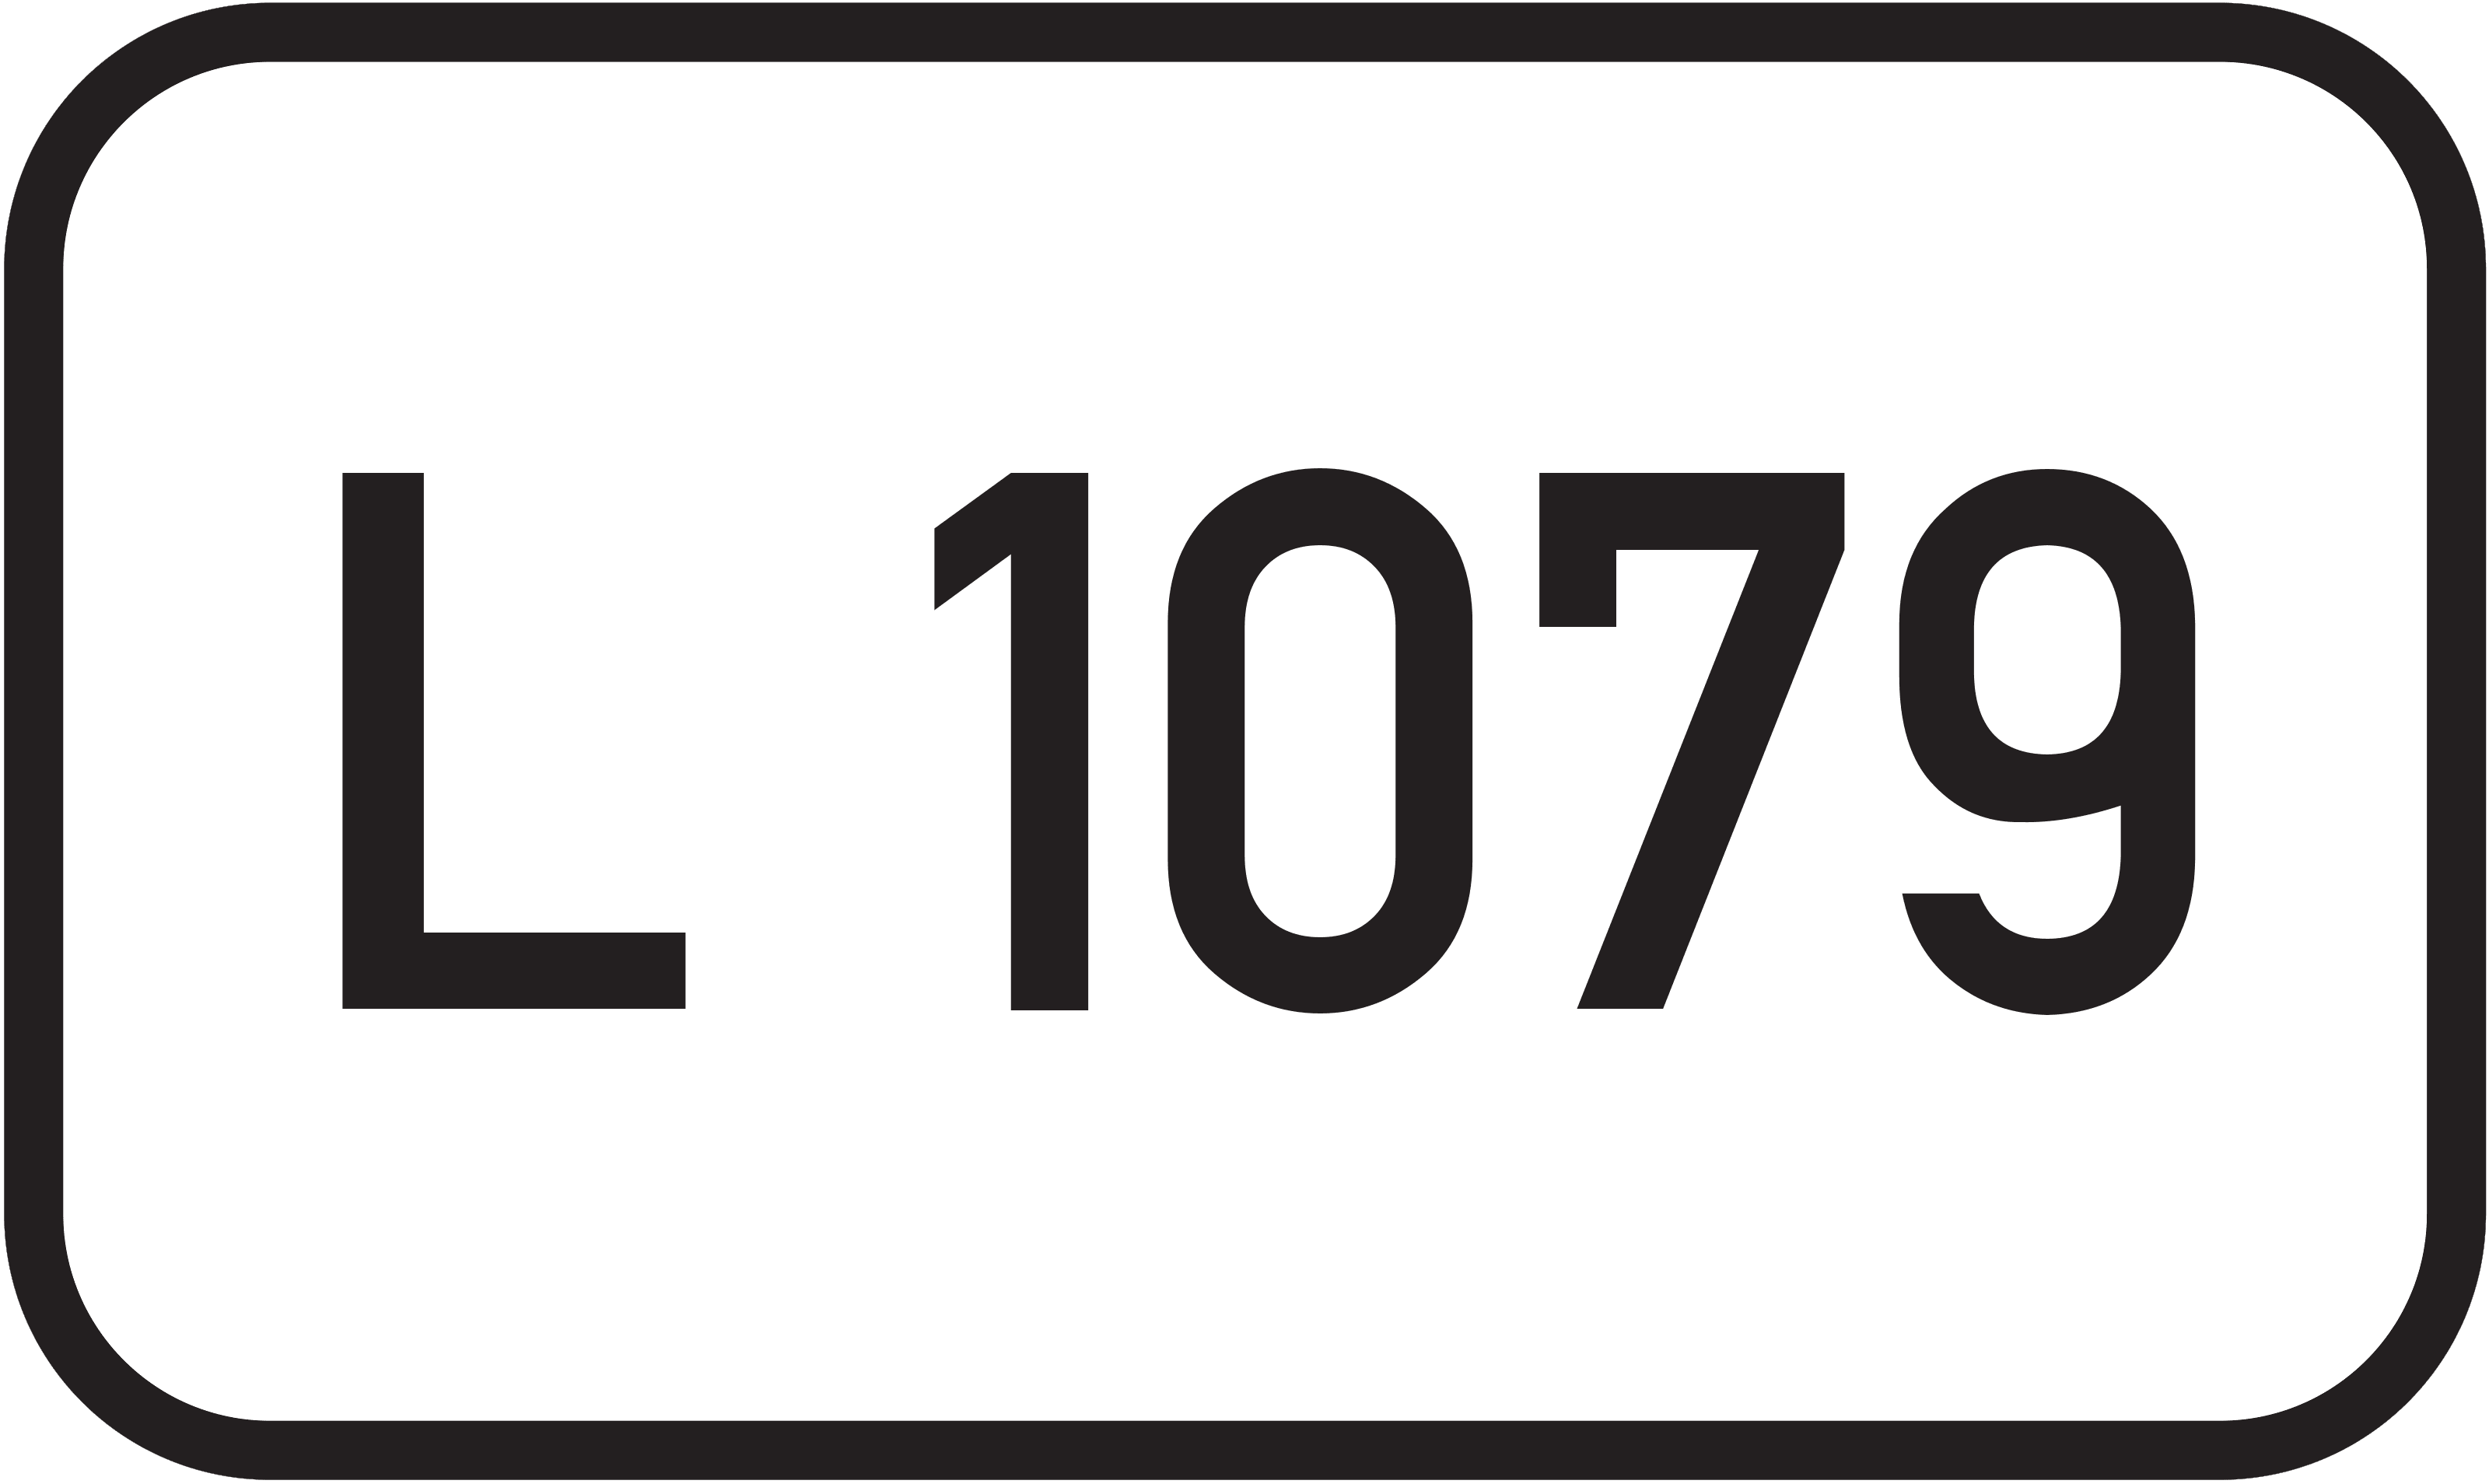 Landesstraße L 1079